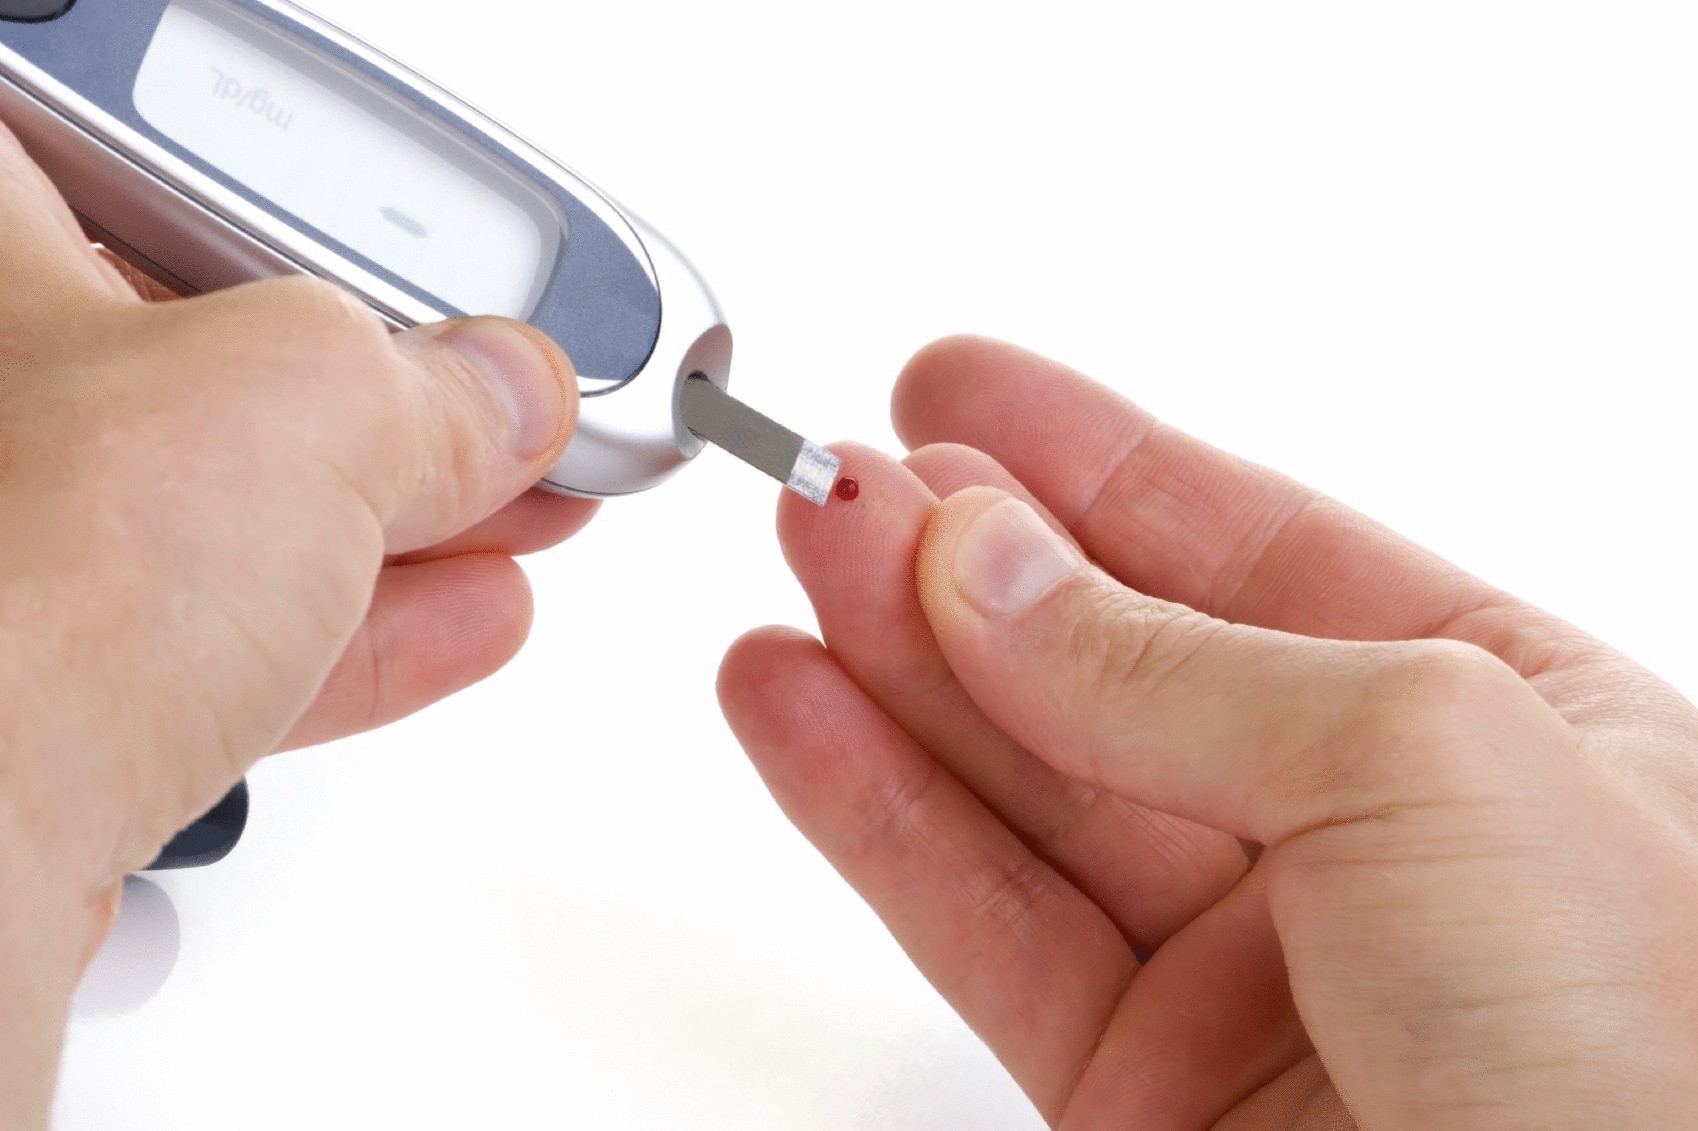 Иммунная перегрузка и эпидемия диабета как результат вакцинации